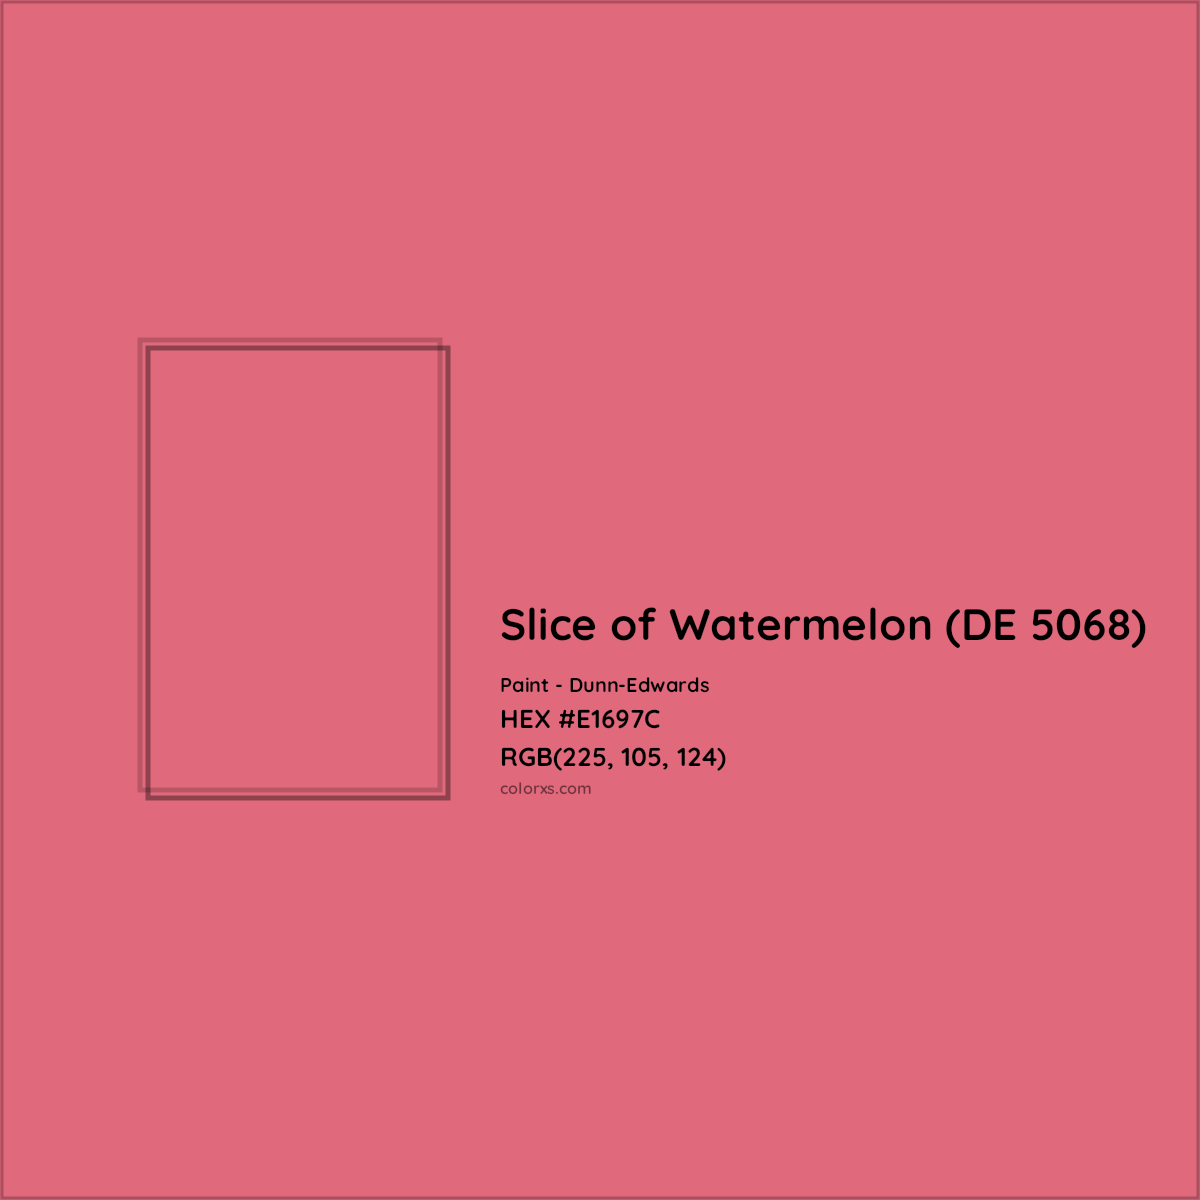 HEX #E1697C Slice of Watermelon (DE 5068) Paint Dunn-Edwards - Color Code